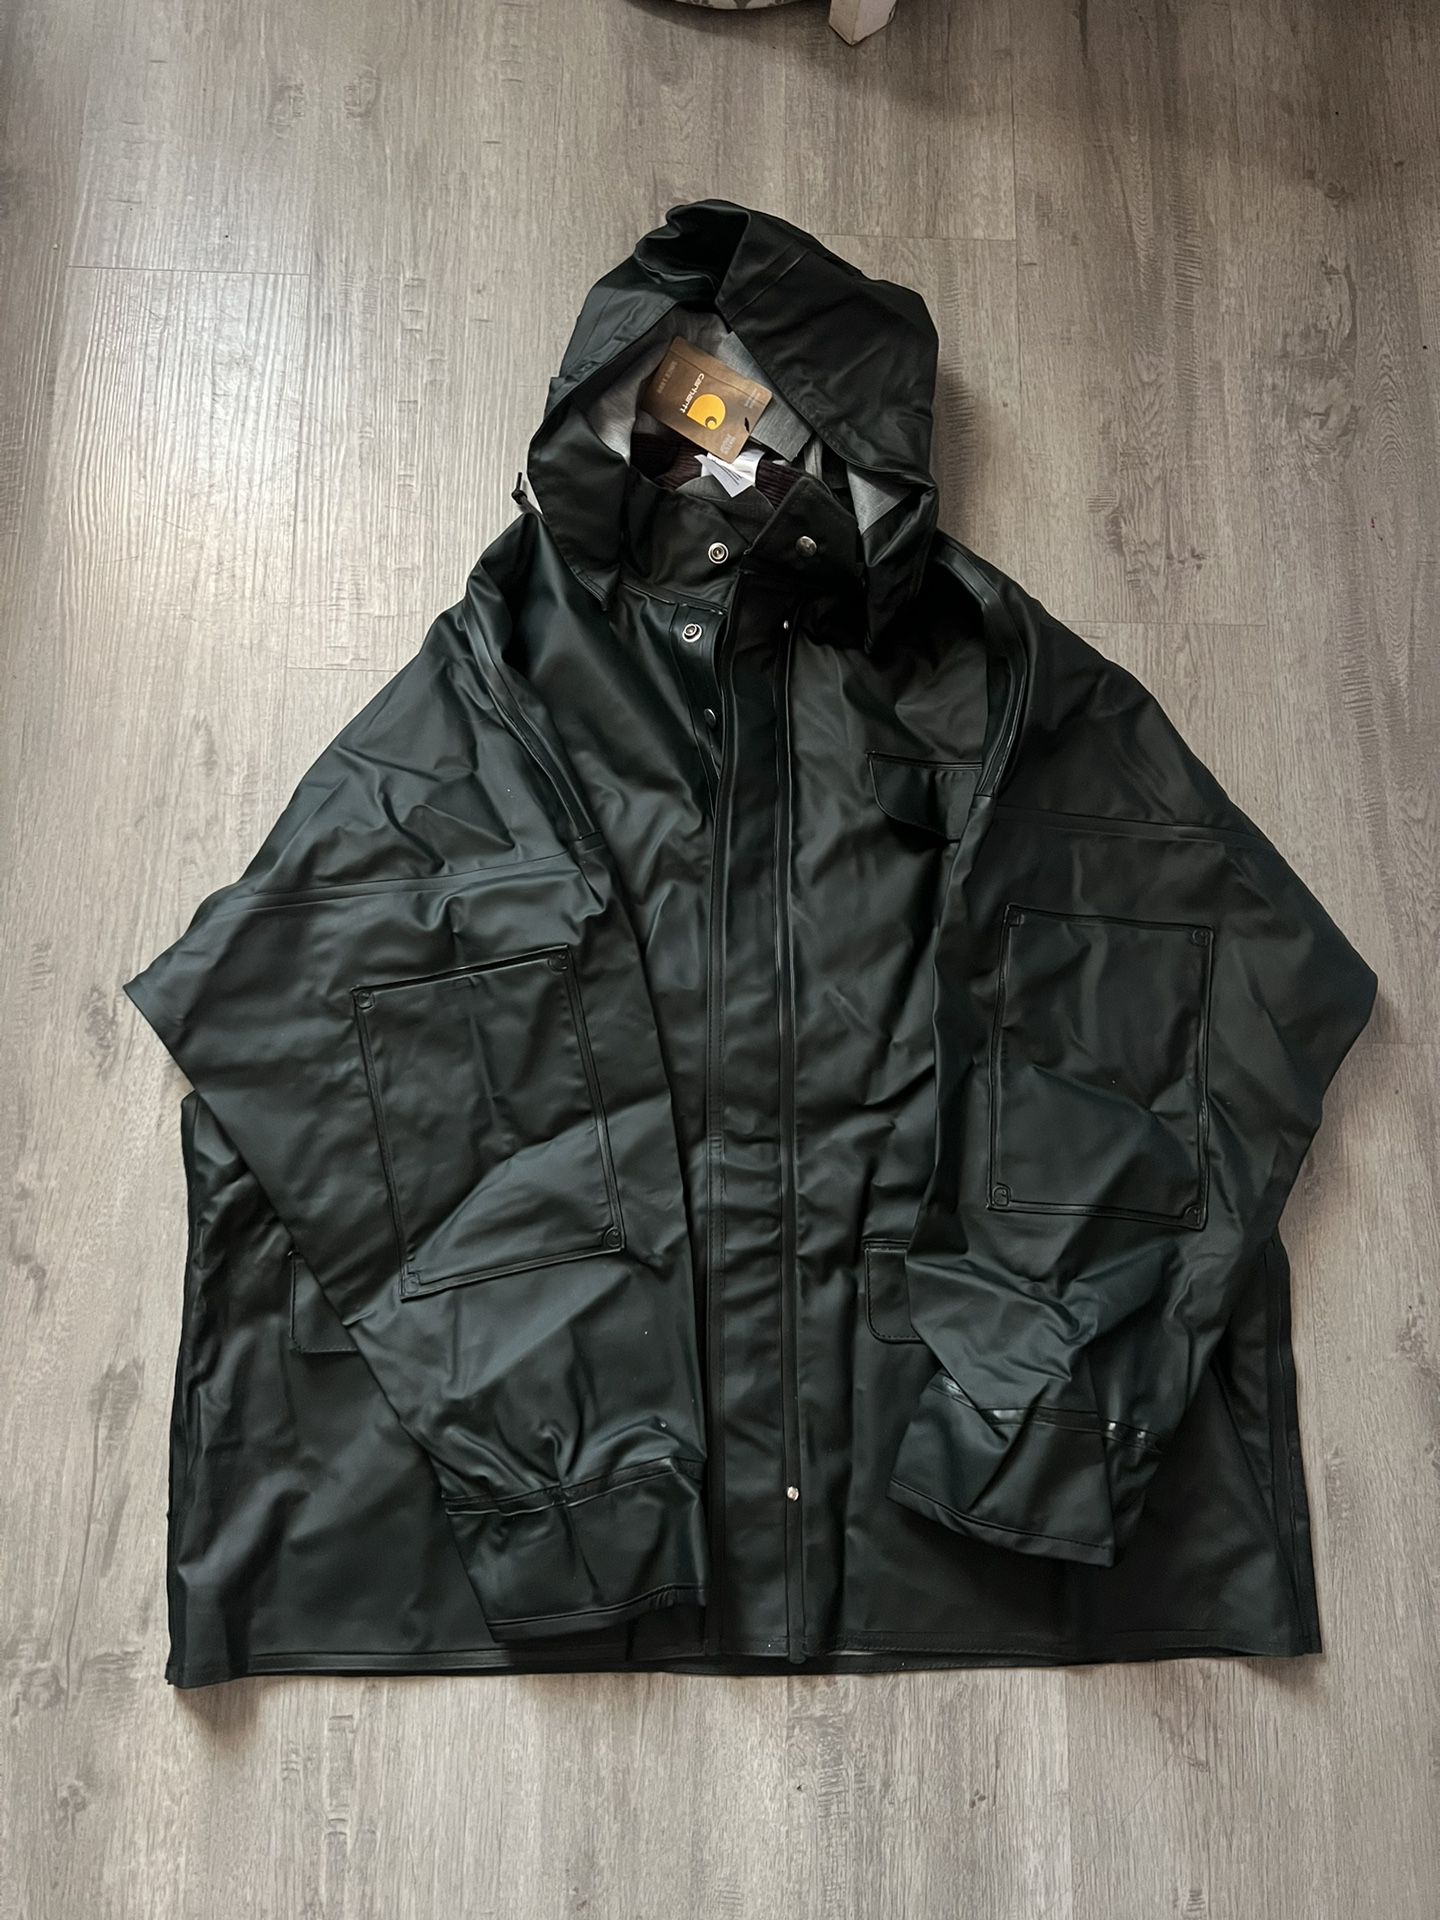 Mens Carhartt Waterproof Rain Jacket XL